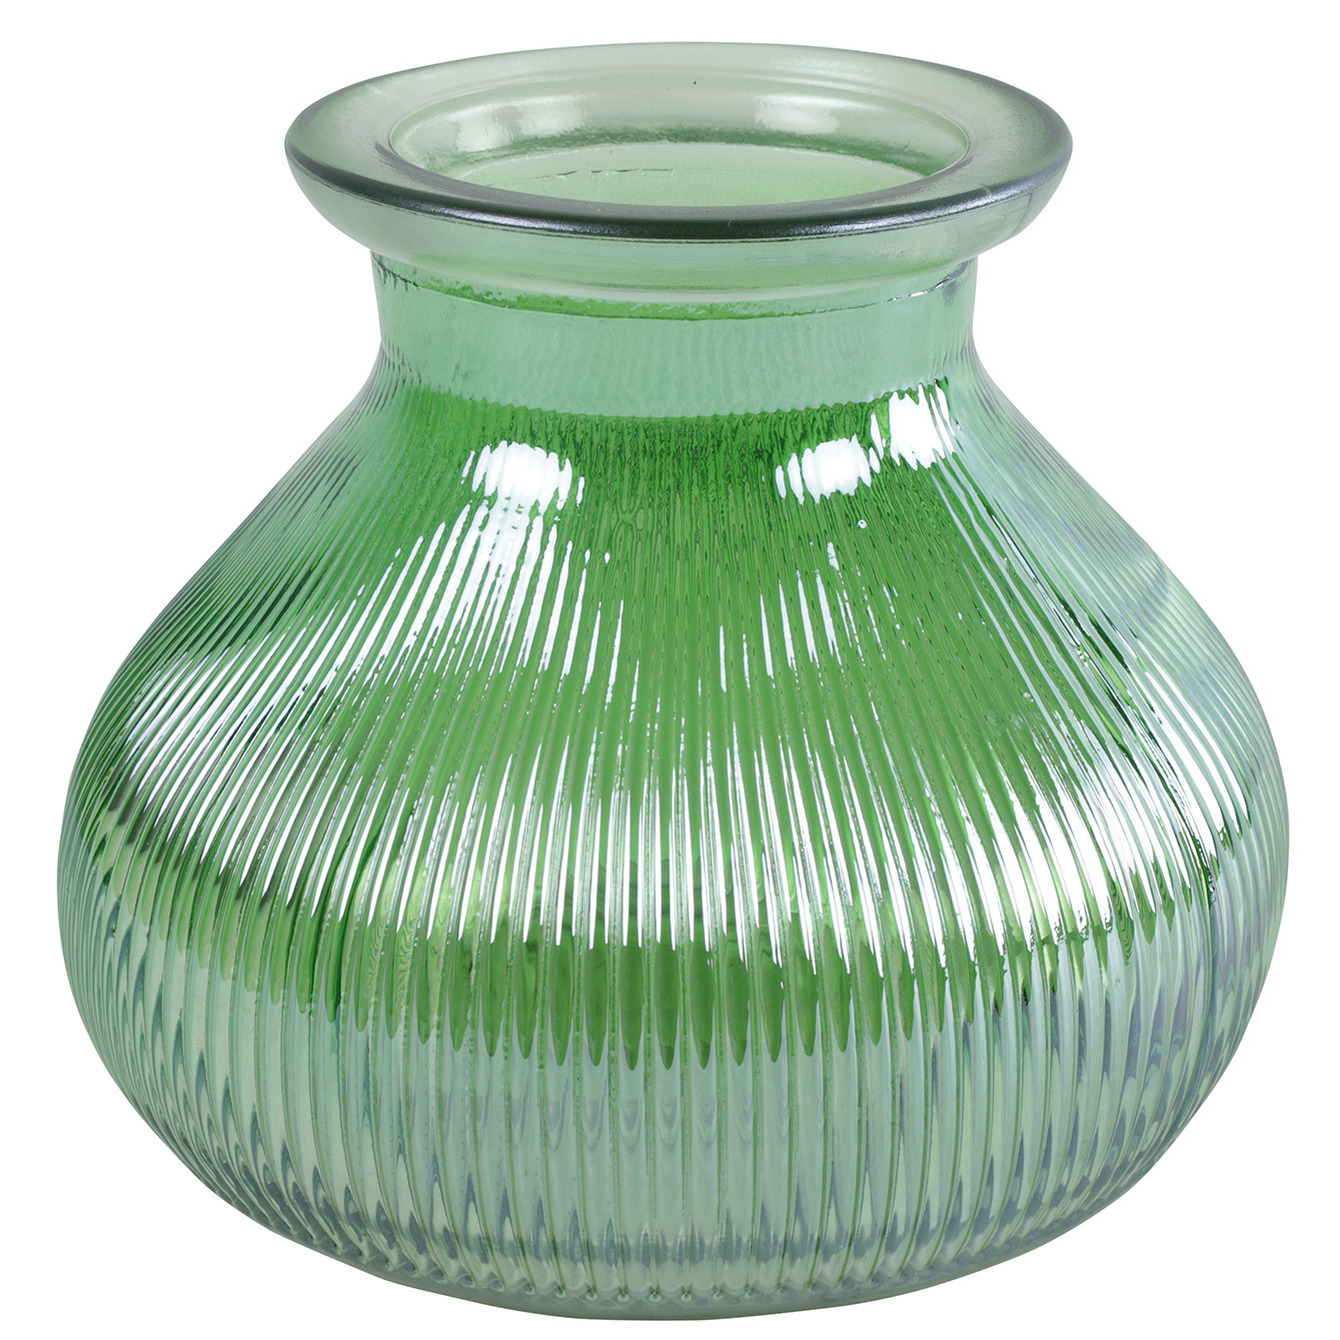 Bloemenvaas groen-transparant glas H12 x D15 cm